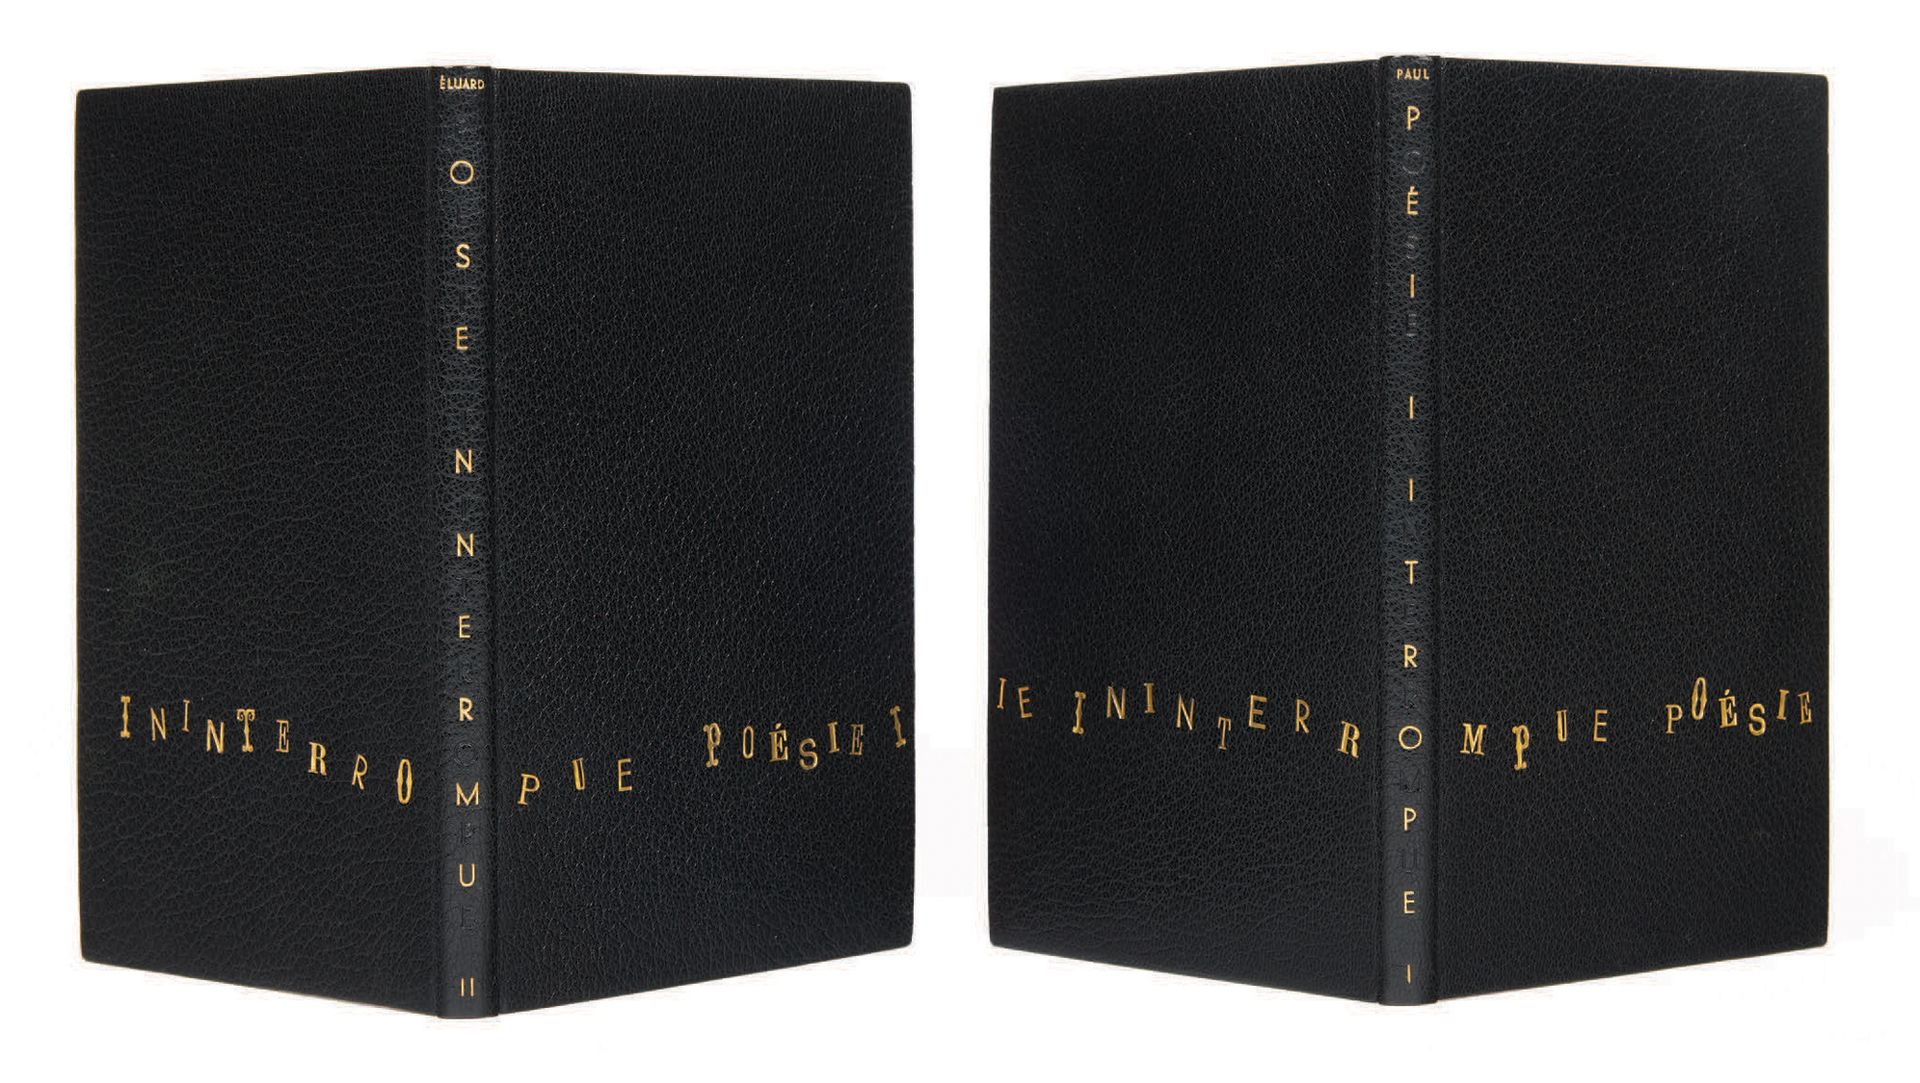 Paul Eluard. Poesía ininterrumpida I y II. París, Gallimard, 1946-1953.
2 volúme&hellip;